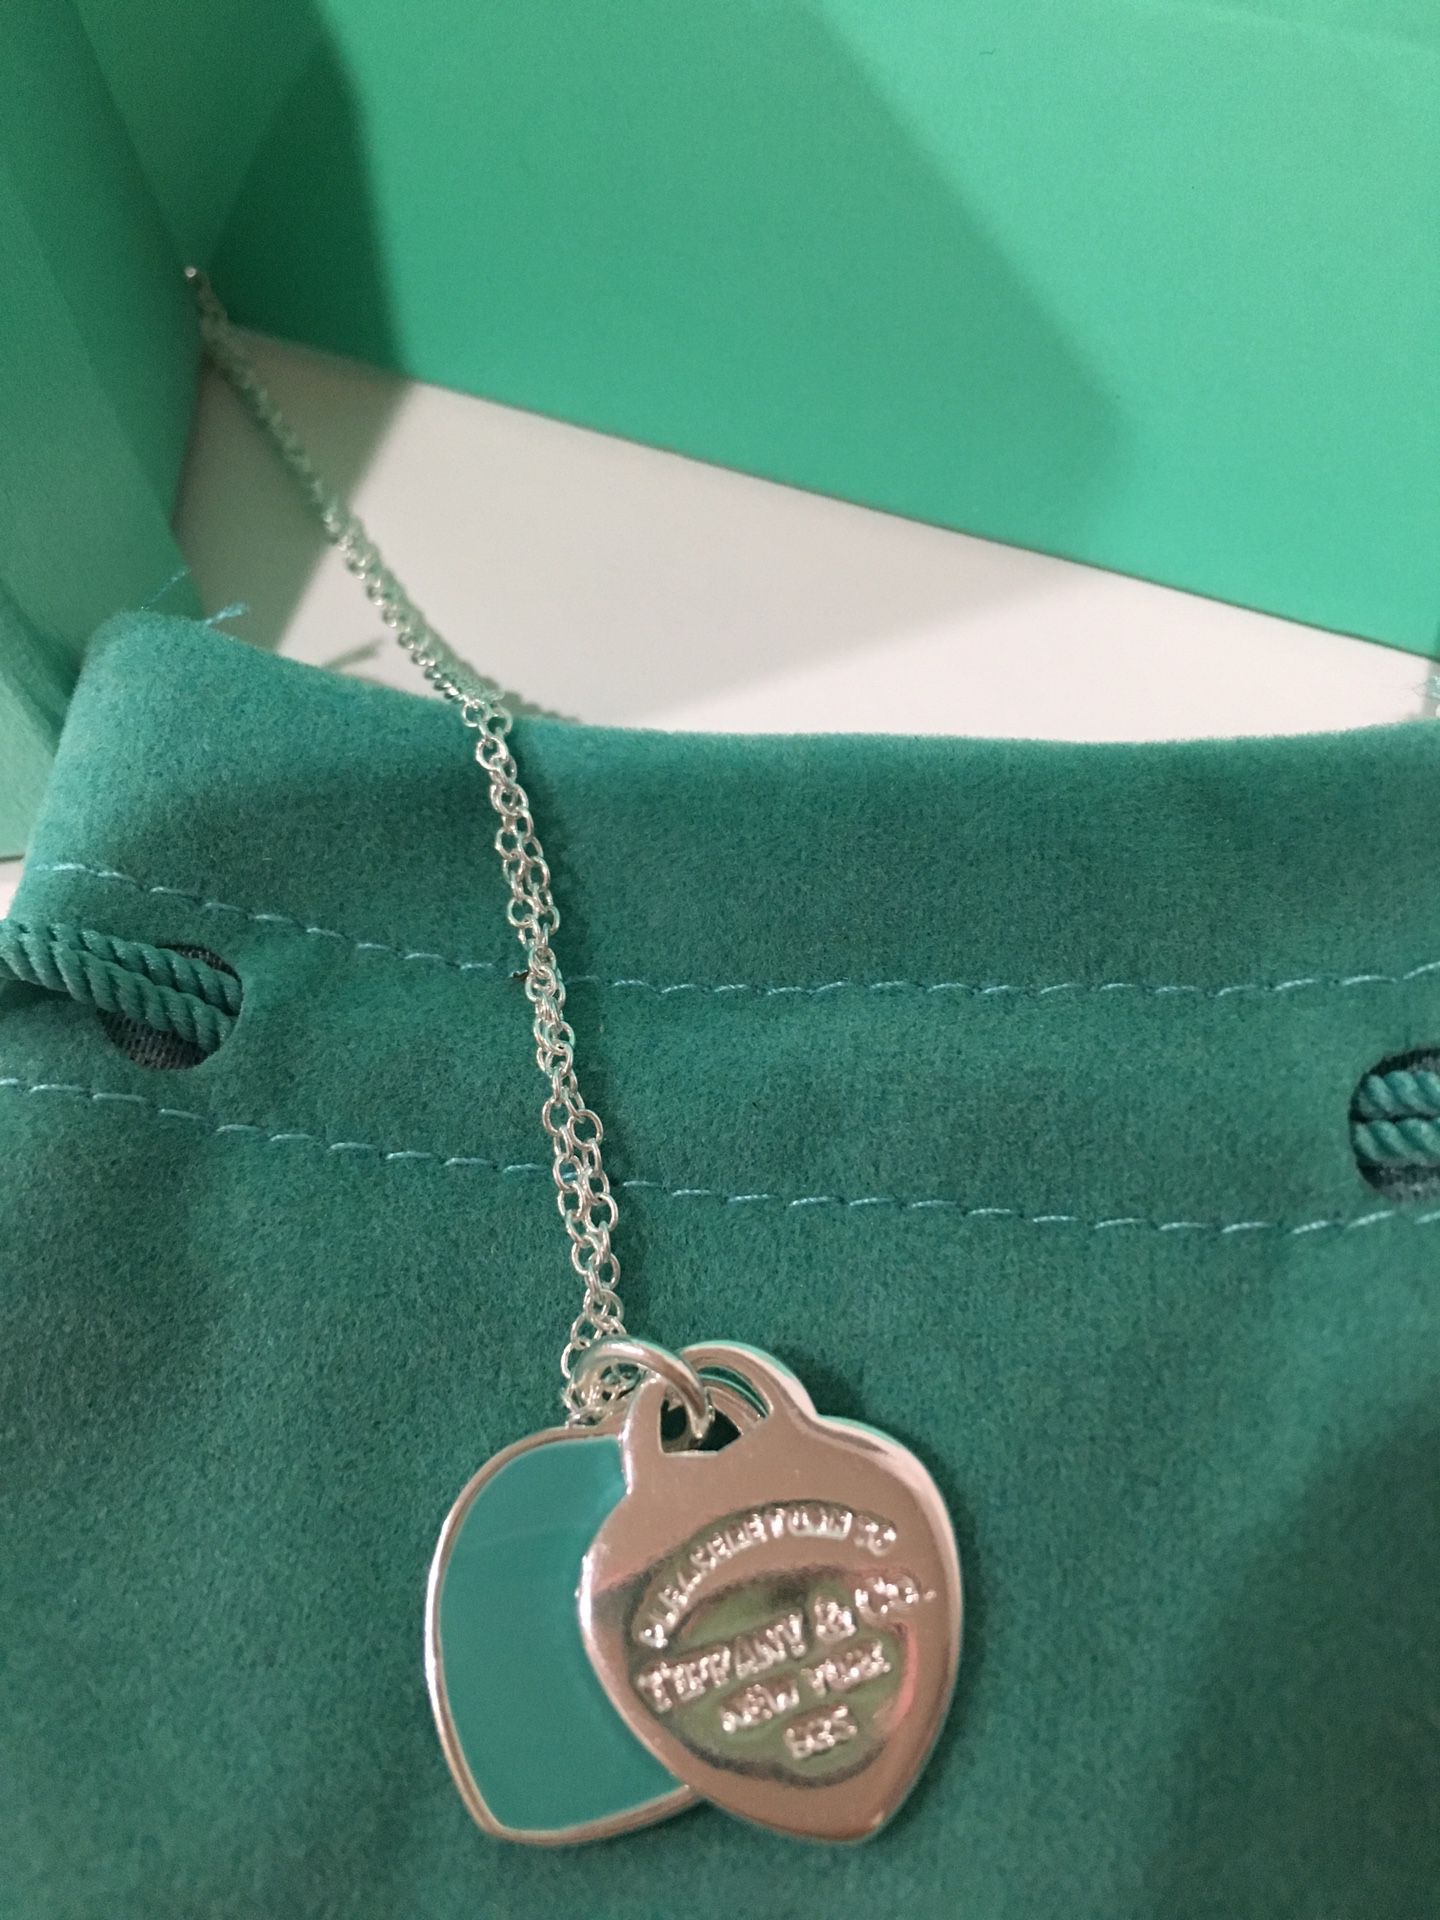 Tiffany & Co Blue Enamel Heart Pendant Necklace Sterling Silver